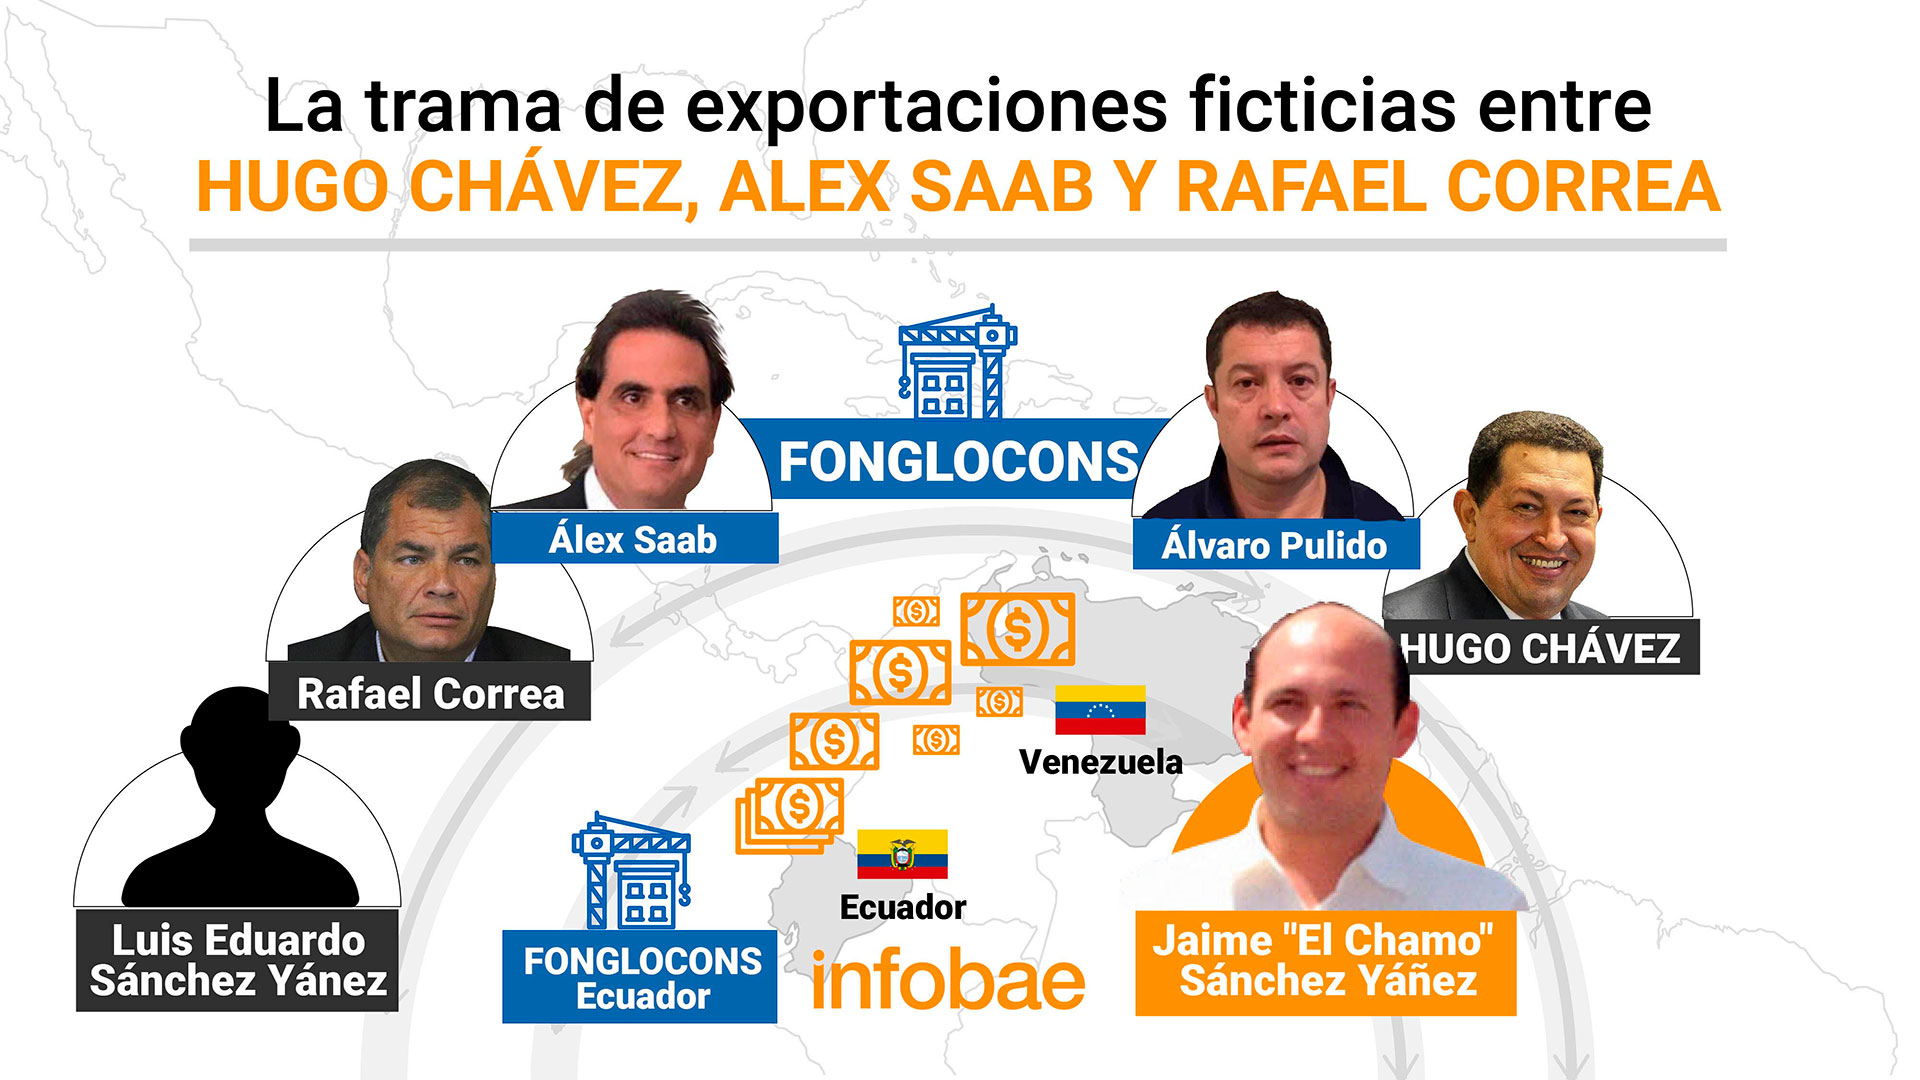 Alex Saab armó un sistema que habría ayudado a lavar USD 2.000 millones  entre los gobiernos de Hugo Chávez y Rafael Correa - Infobae